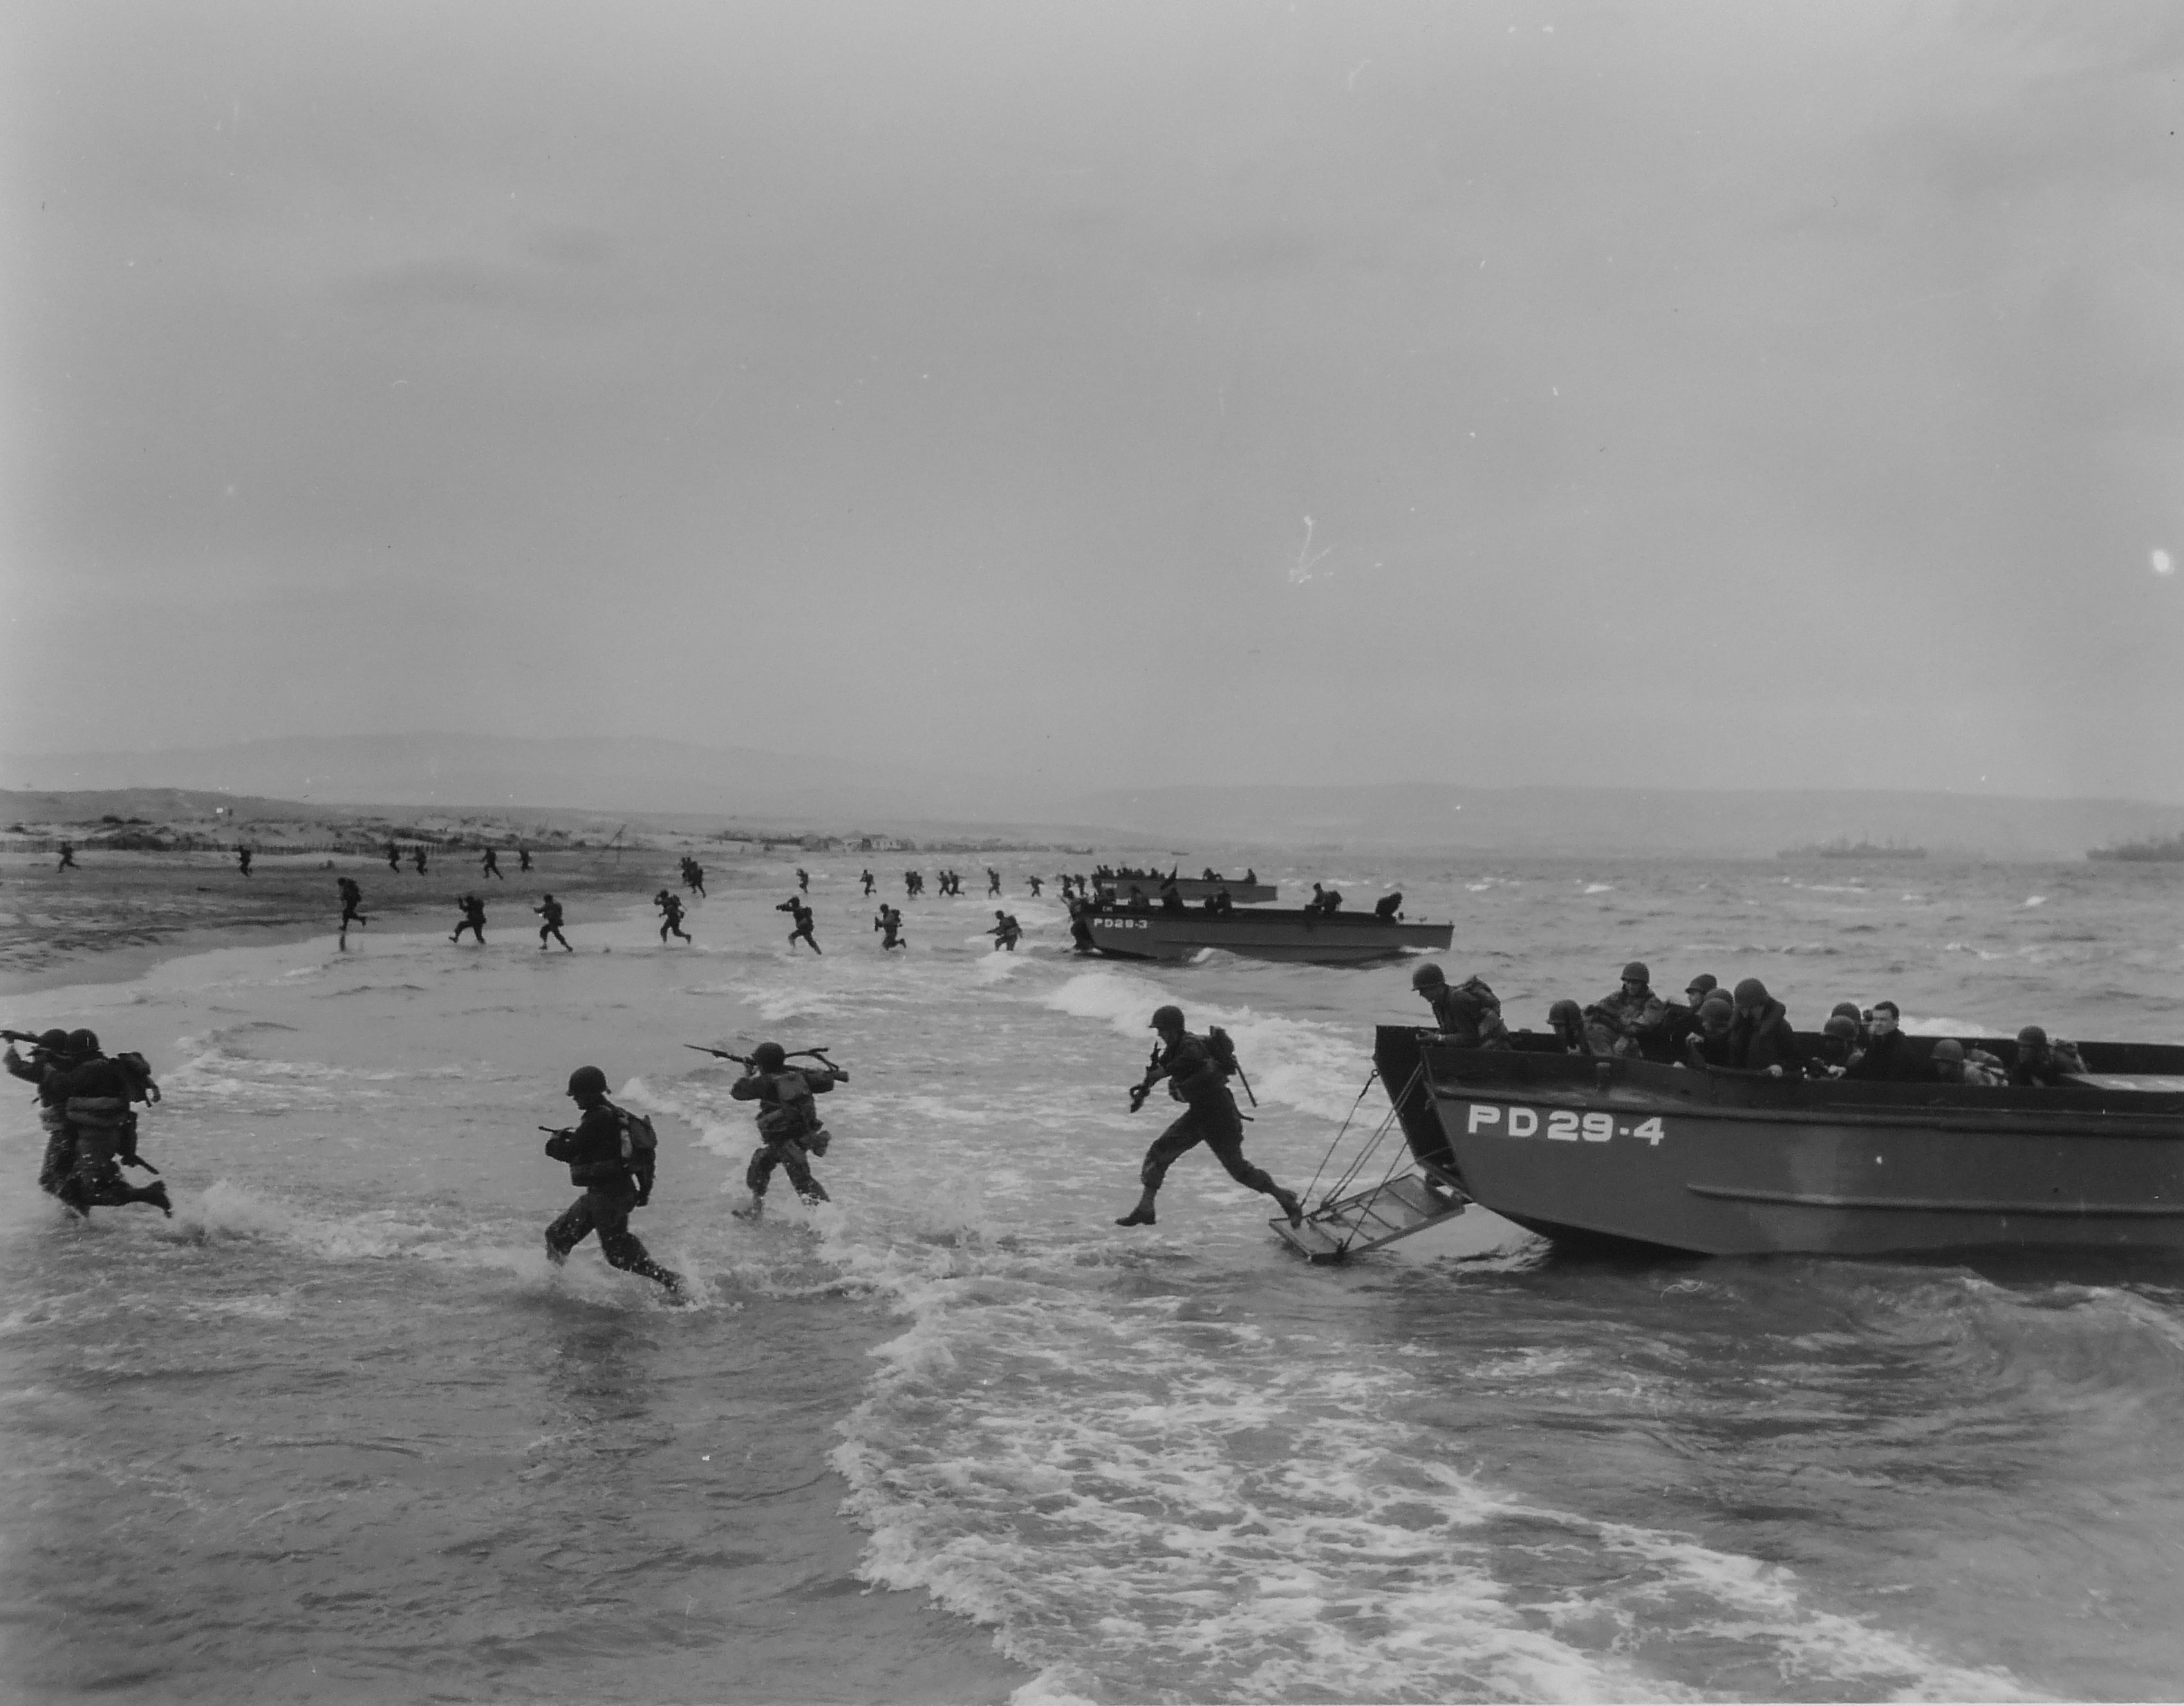 Un momento dello sbarco in Normandia che avverrà il 6 giugno 1944 e che è oggetto della discussione dei tre capi di Stato alla conferenza di Teheran